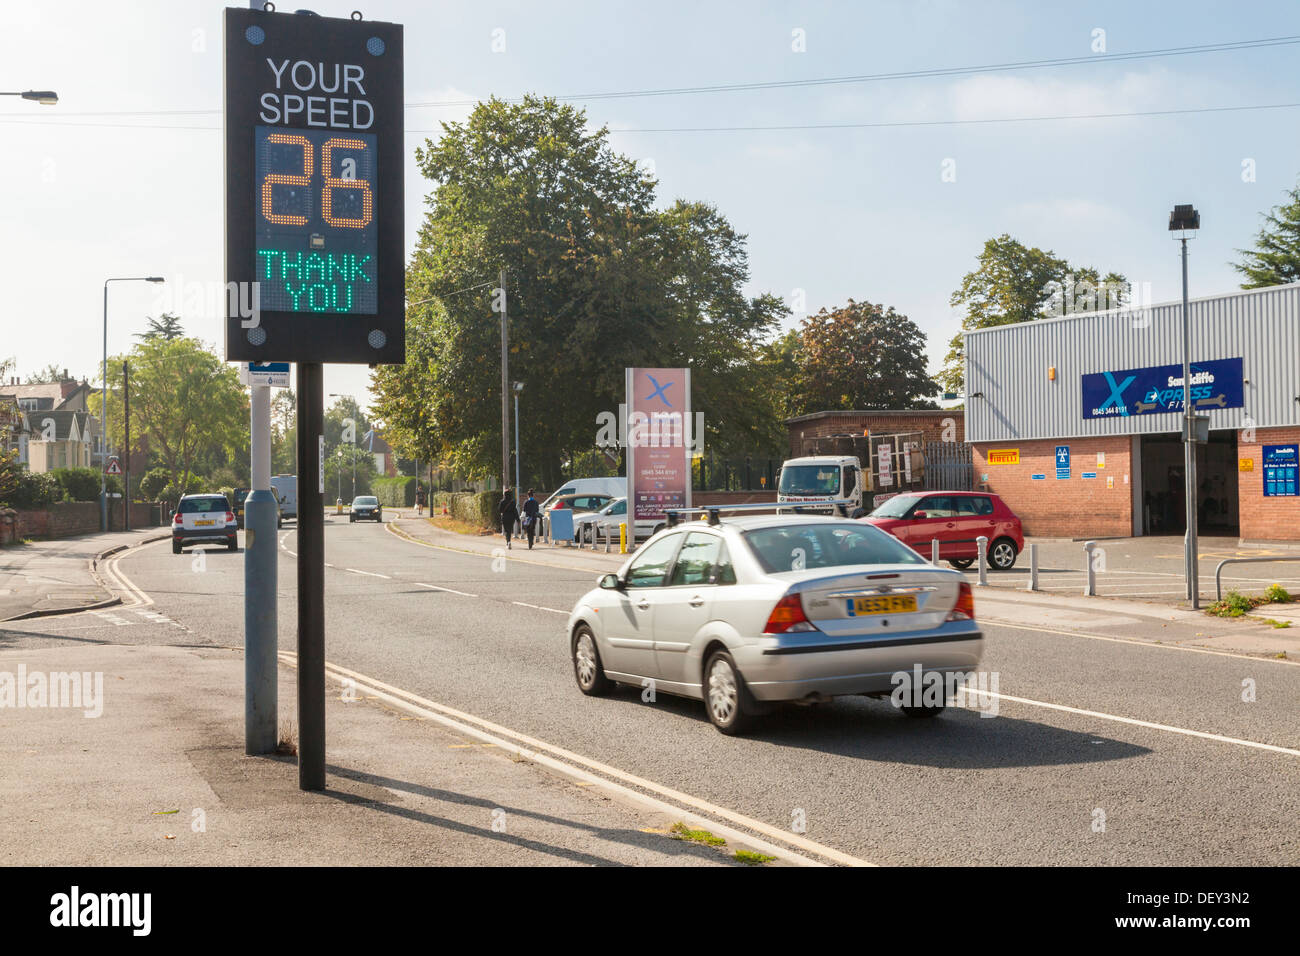 Elektronische Zeichen zeigt Fahrgeschwindigkeit an. Auto innerhalb der Höchstgeschwindigkeit, da es ein Verkehr Geschwindigkeit Warnanzeige, Nottinghamshire, England, Großbritannien Stockfoto